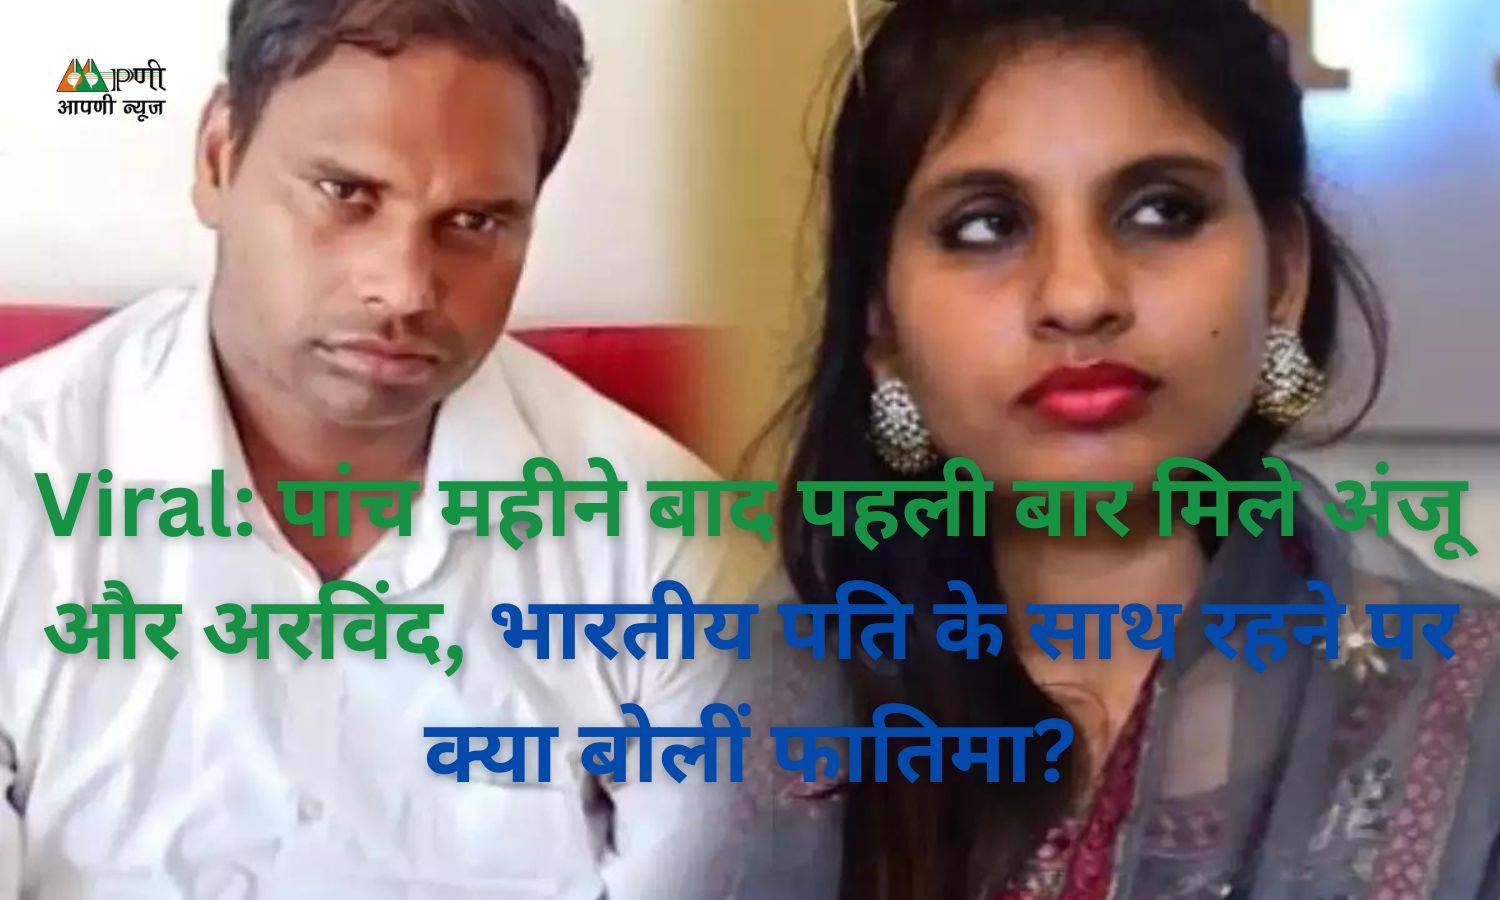 Viral: पांच महीने बाद पहली बार मिले अंजू और अरविंद, भारतीय पति के साथ रहने पर क्या बोलीं फातिमा?